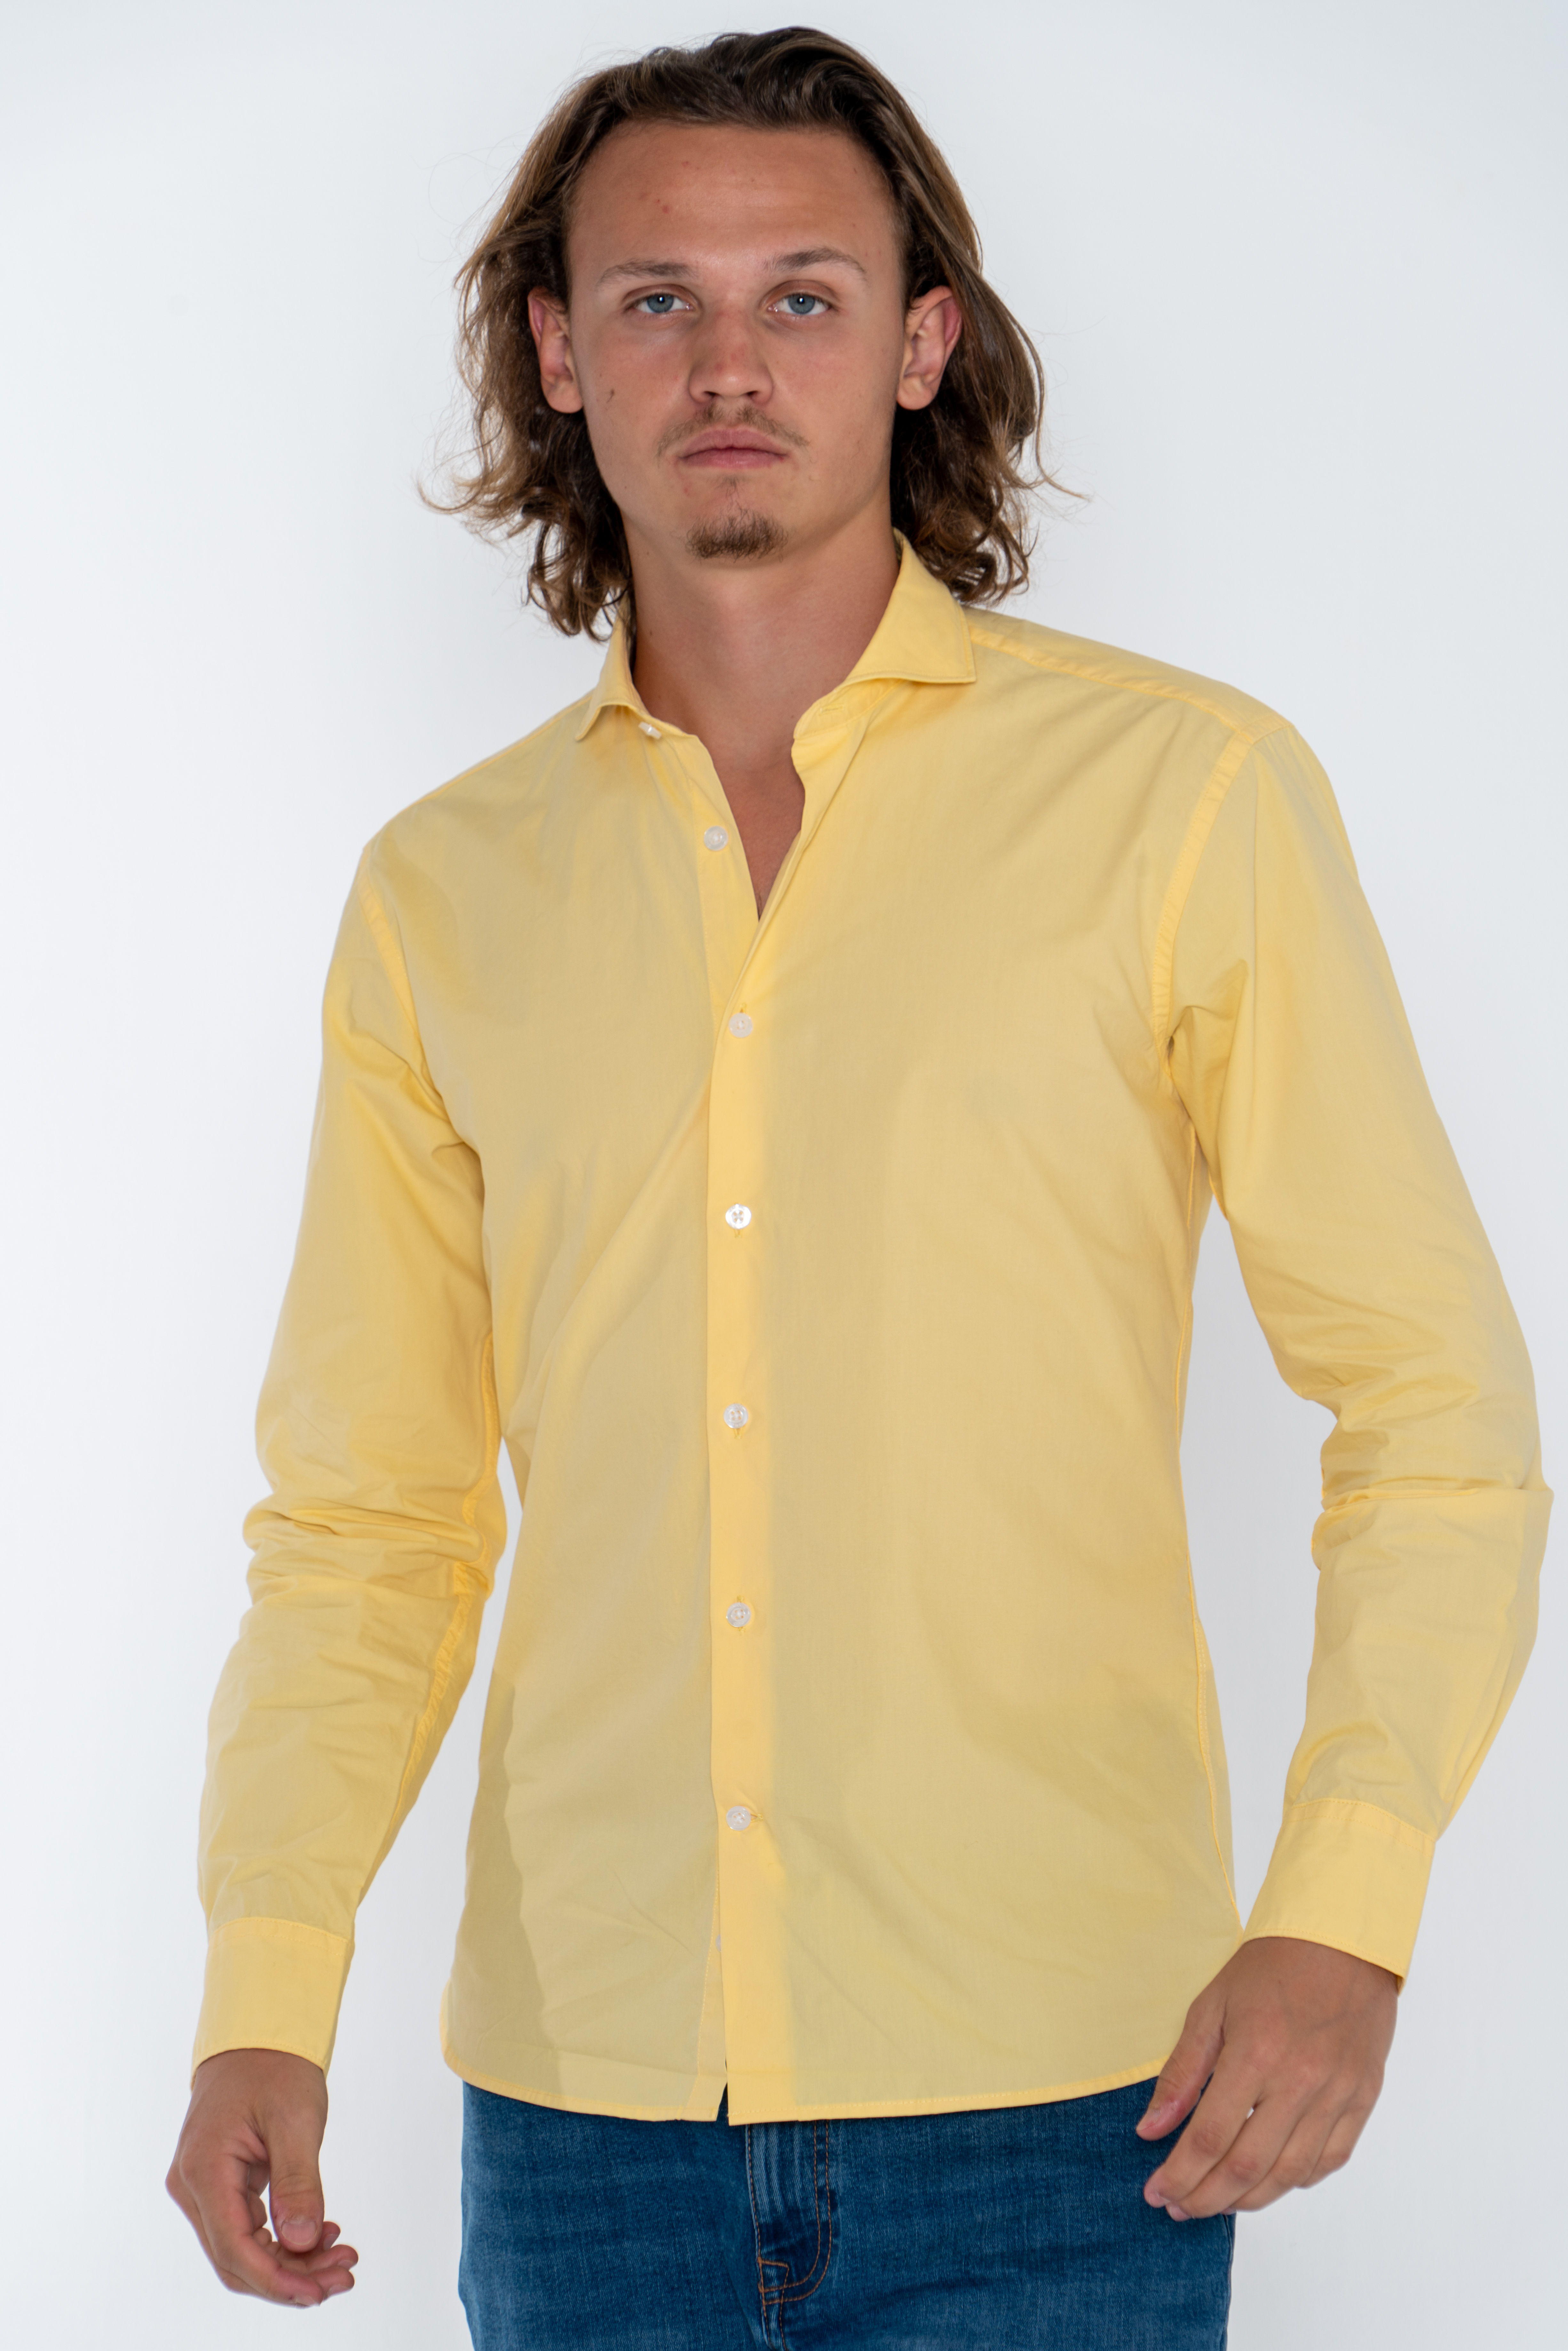 Shirt Sport Light Yellow Casual Man